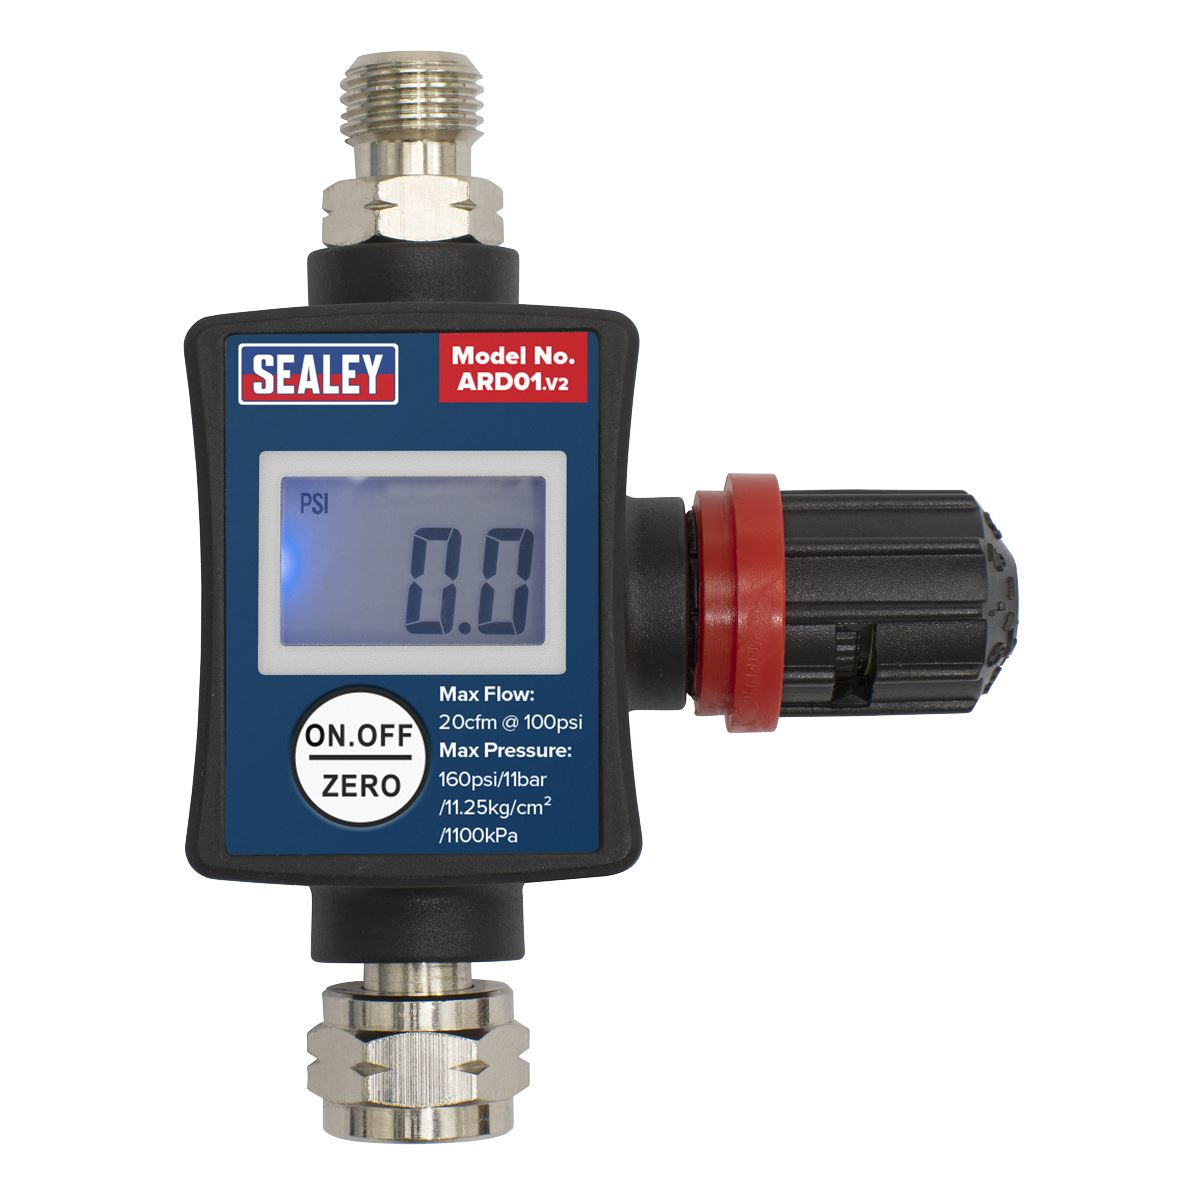 Sealey On Gun Digital Air Pressure Regulator Gauge Spray Tool LED Display